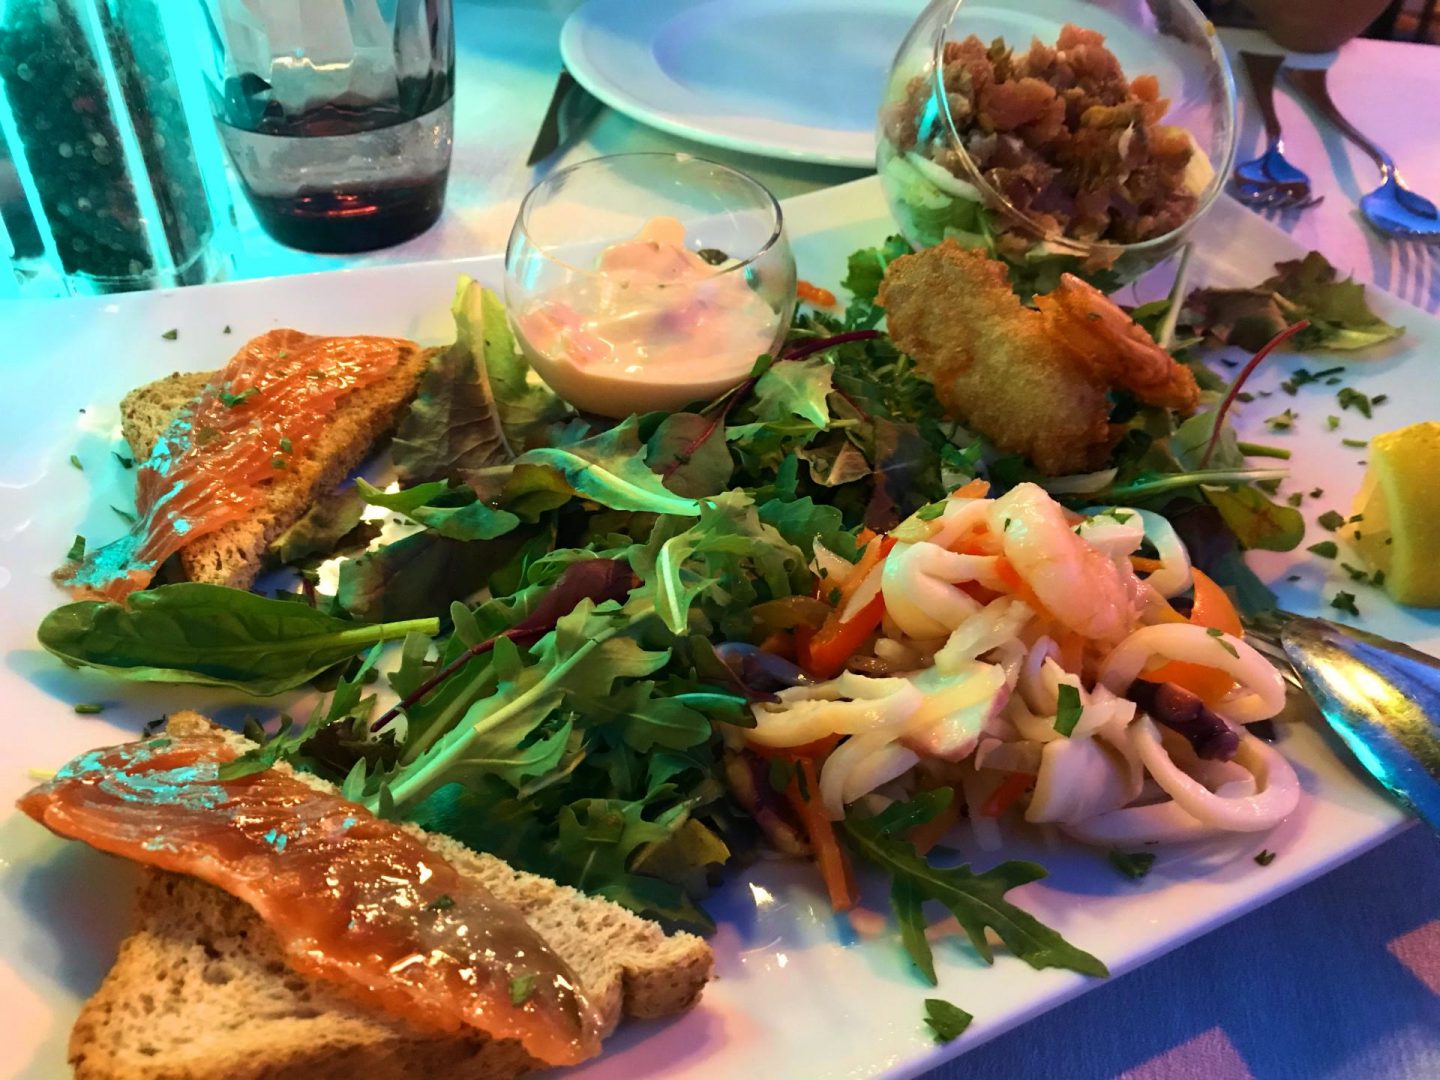 Erfahrung Bewertung Kritik Hotel Brenzone Tagliatelle gemischte Fischvorspeise Foodblog Sternestulle